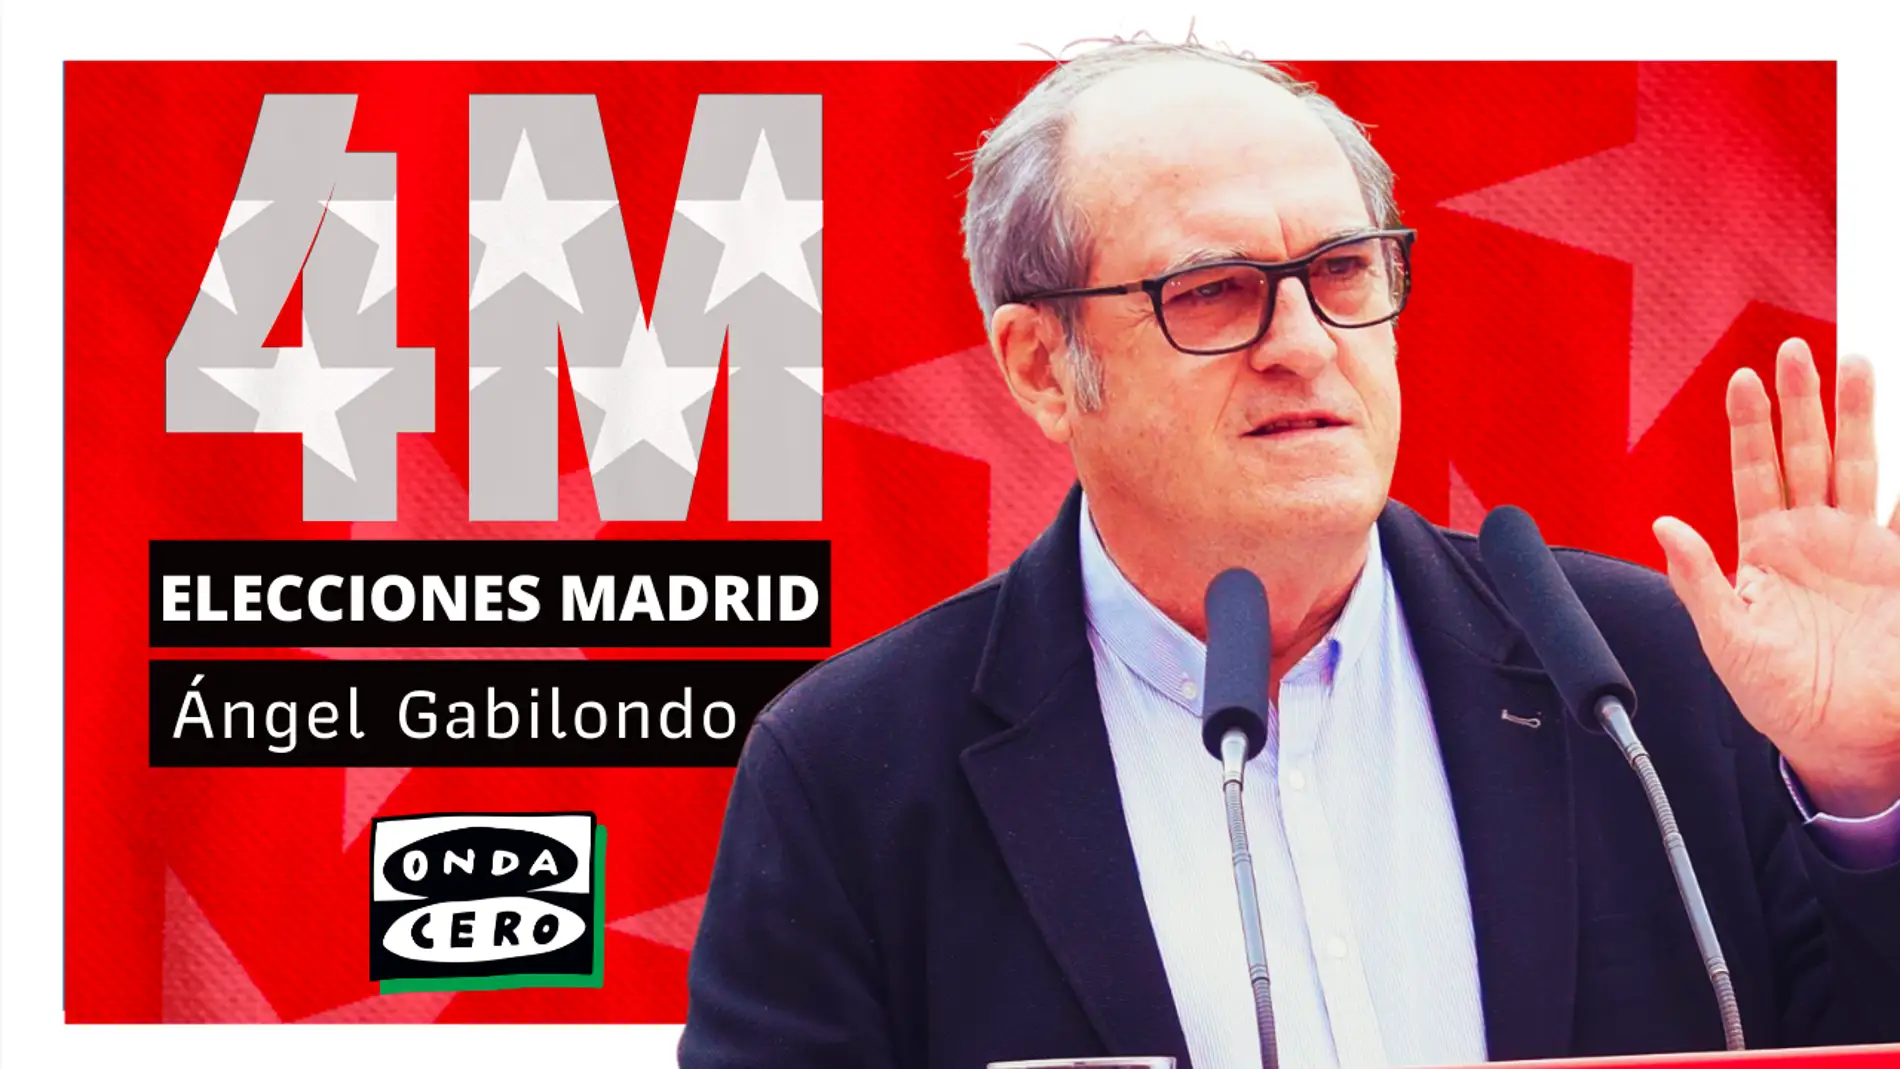 Así es Ángel Gabilondo, candidato del PSOE en las elecciones madrileñas